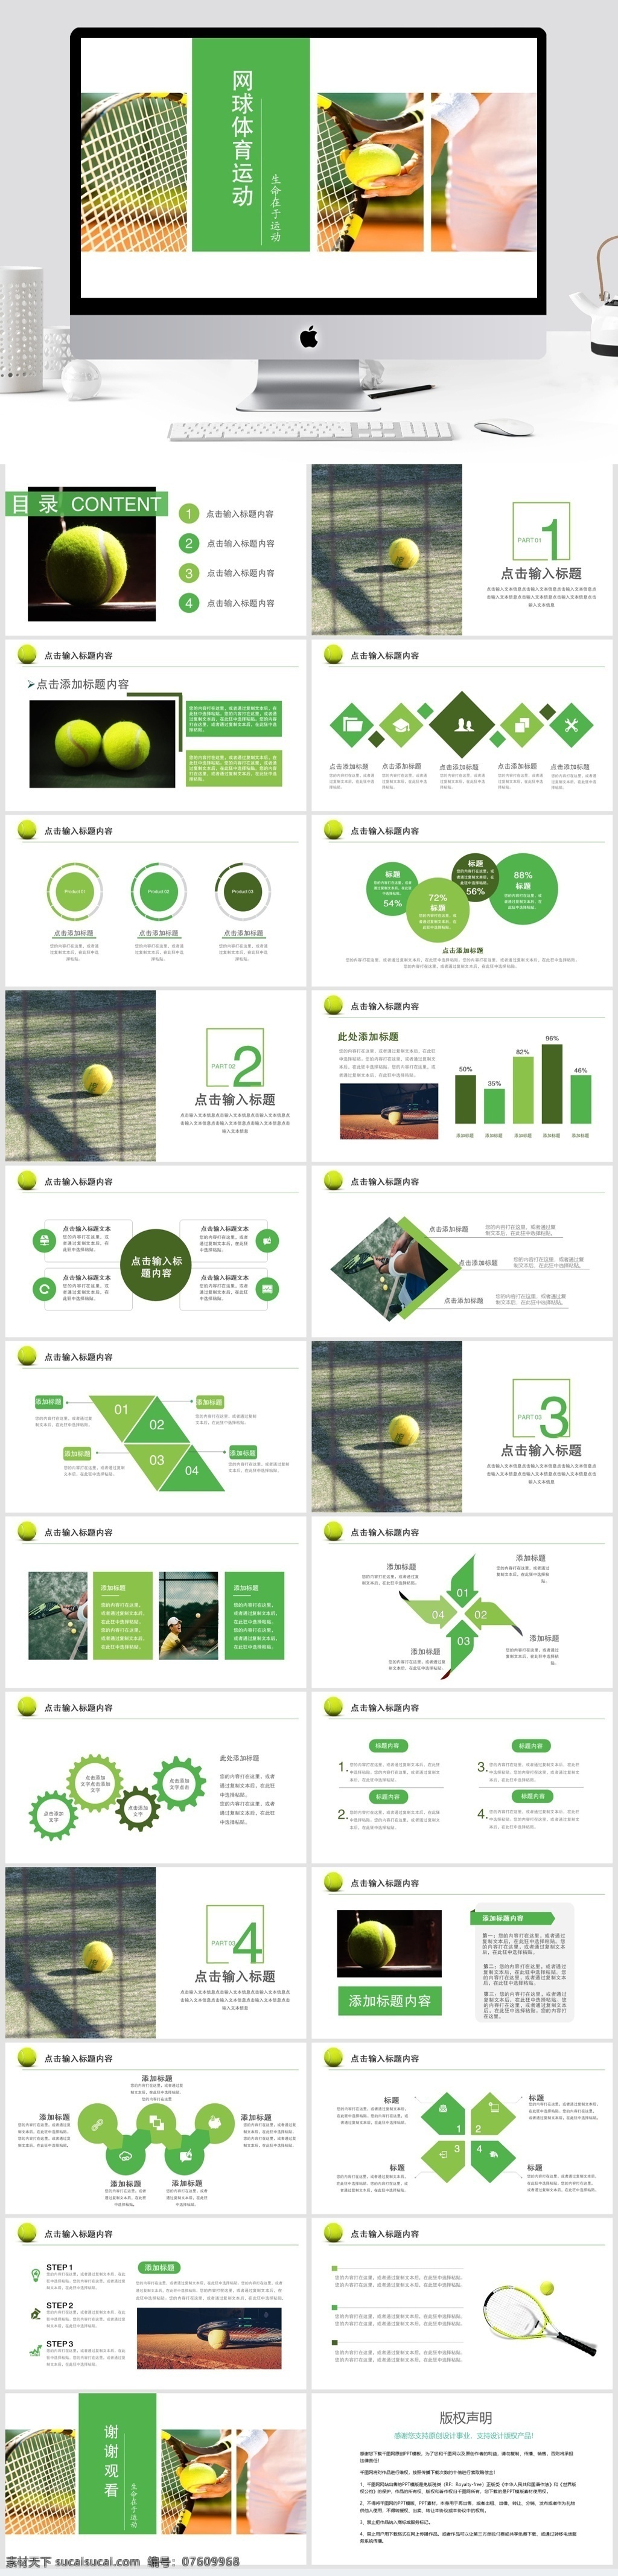 绿色 清新 网球 体育运动 模板 网球运动 体育素材 绿色主题 商业计划书 动态